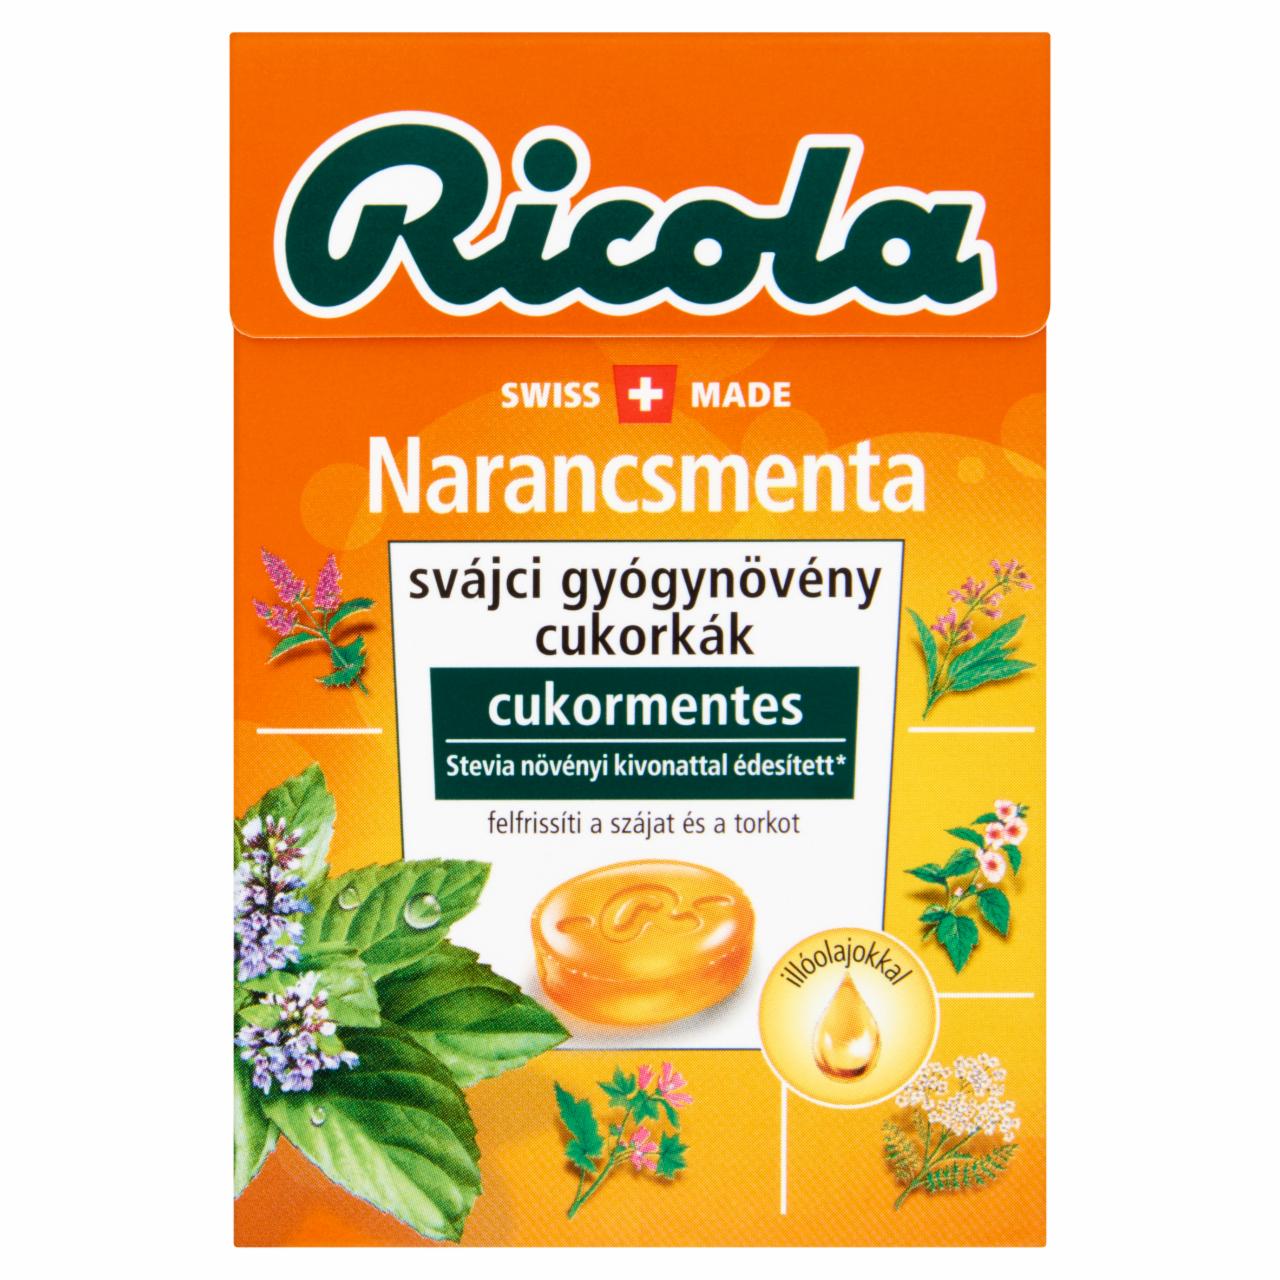 Képek - Ricola Narancsmenta cukormentes svájci gyógynövény cukorkák édesítőszerekkel 40 g